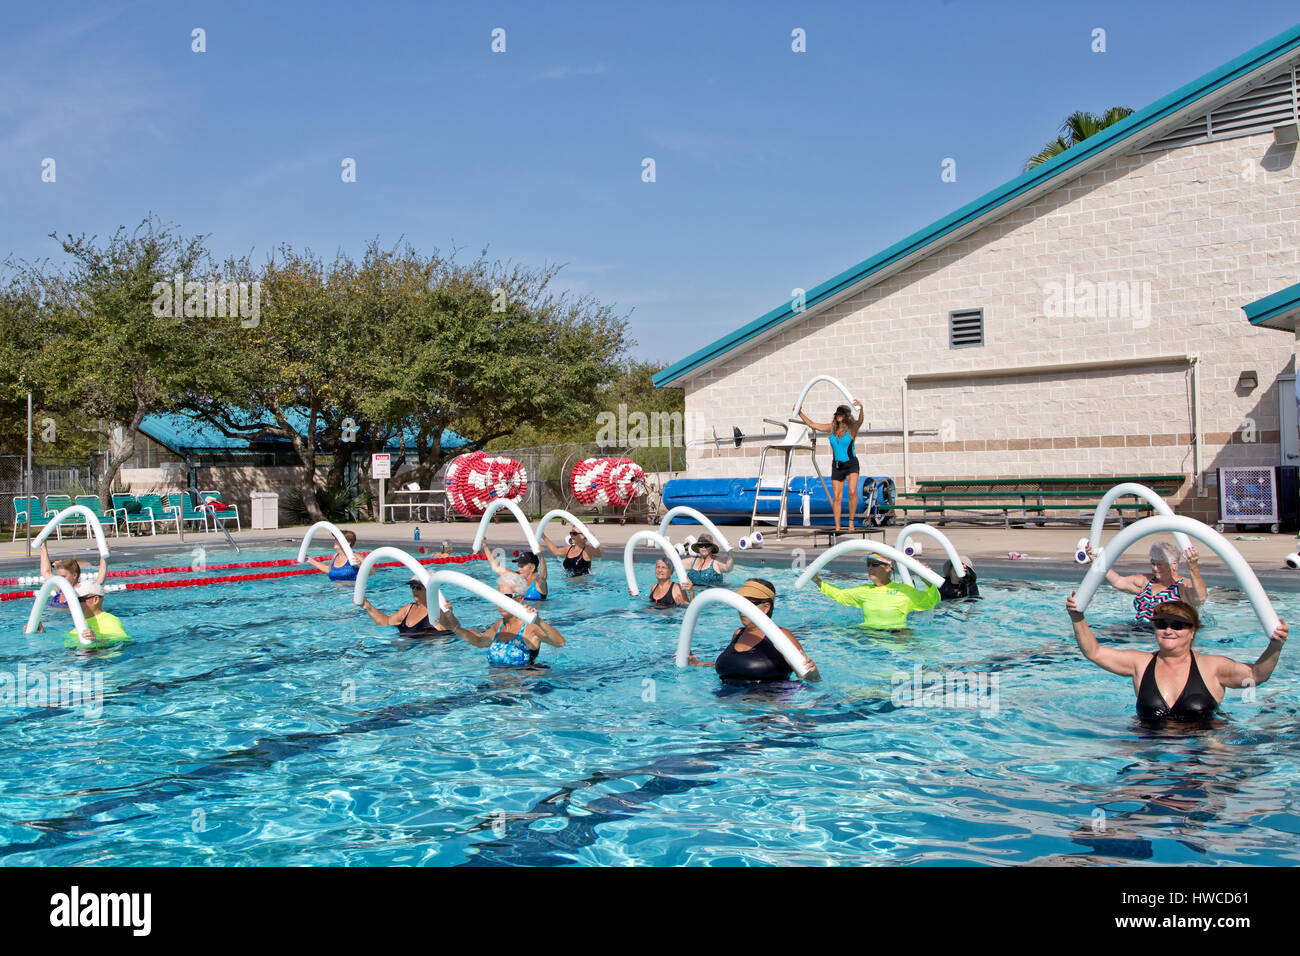 Gruppe von Frauen (verschiedenen Alters) Teilnahme an Wasser-Aerobic-Kurs, Ausbilder demonstriert, mit Styropor "Wasser Nudeln", Outdoor-beheizter Pool. Stockfoto